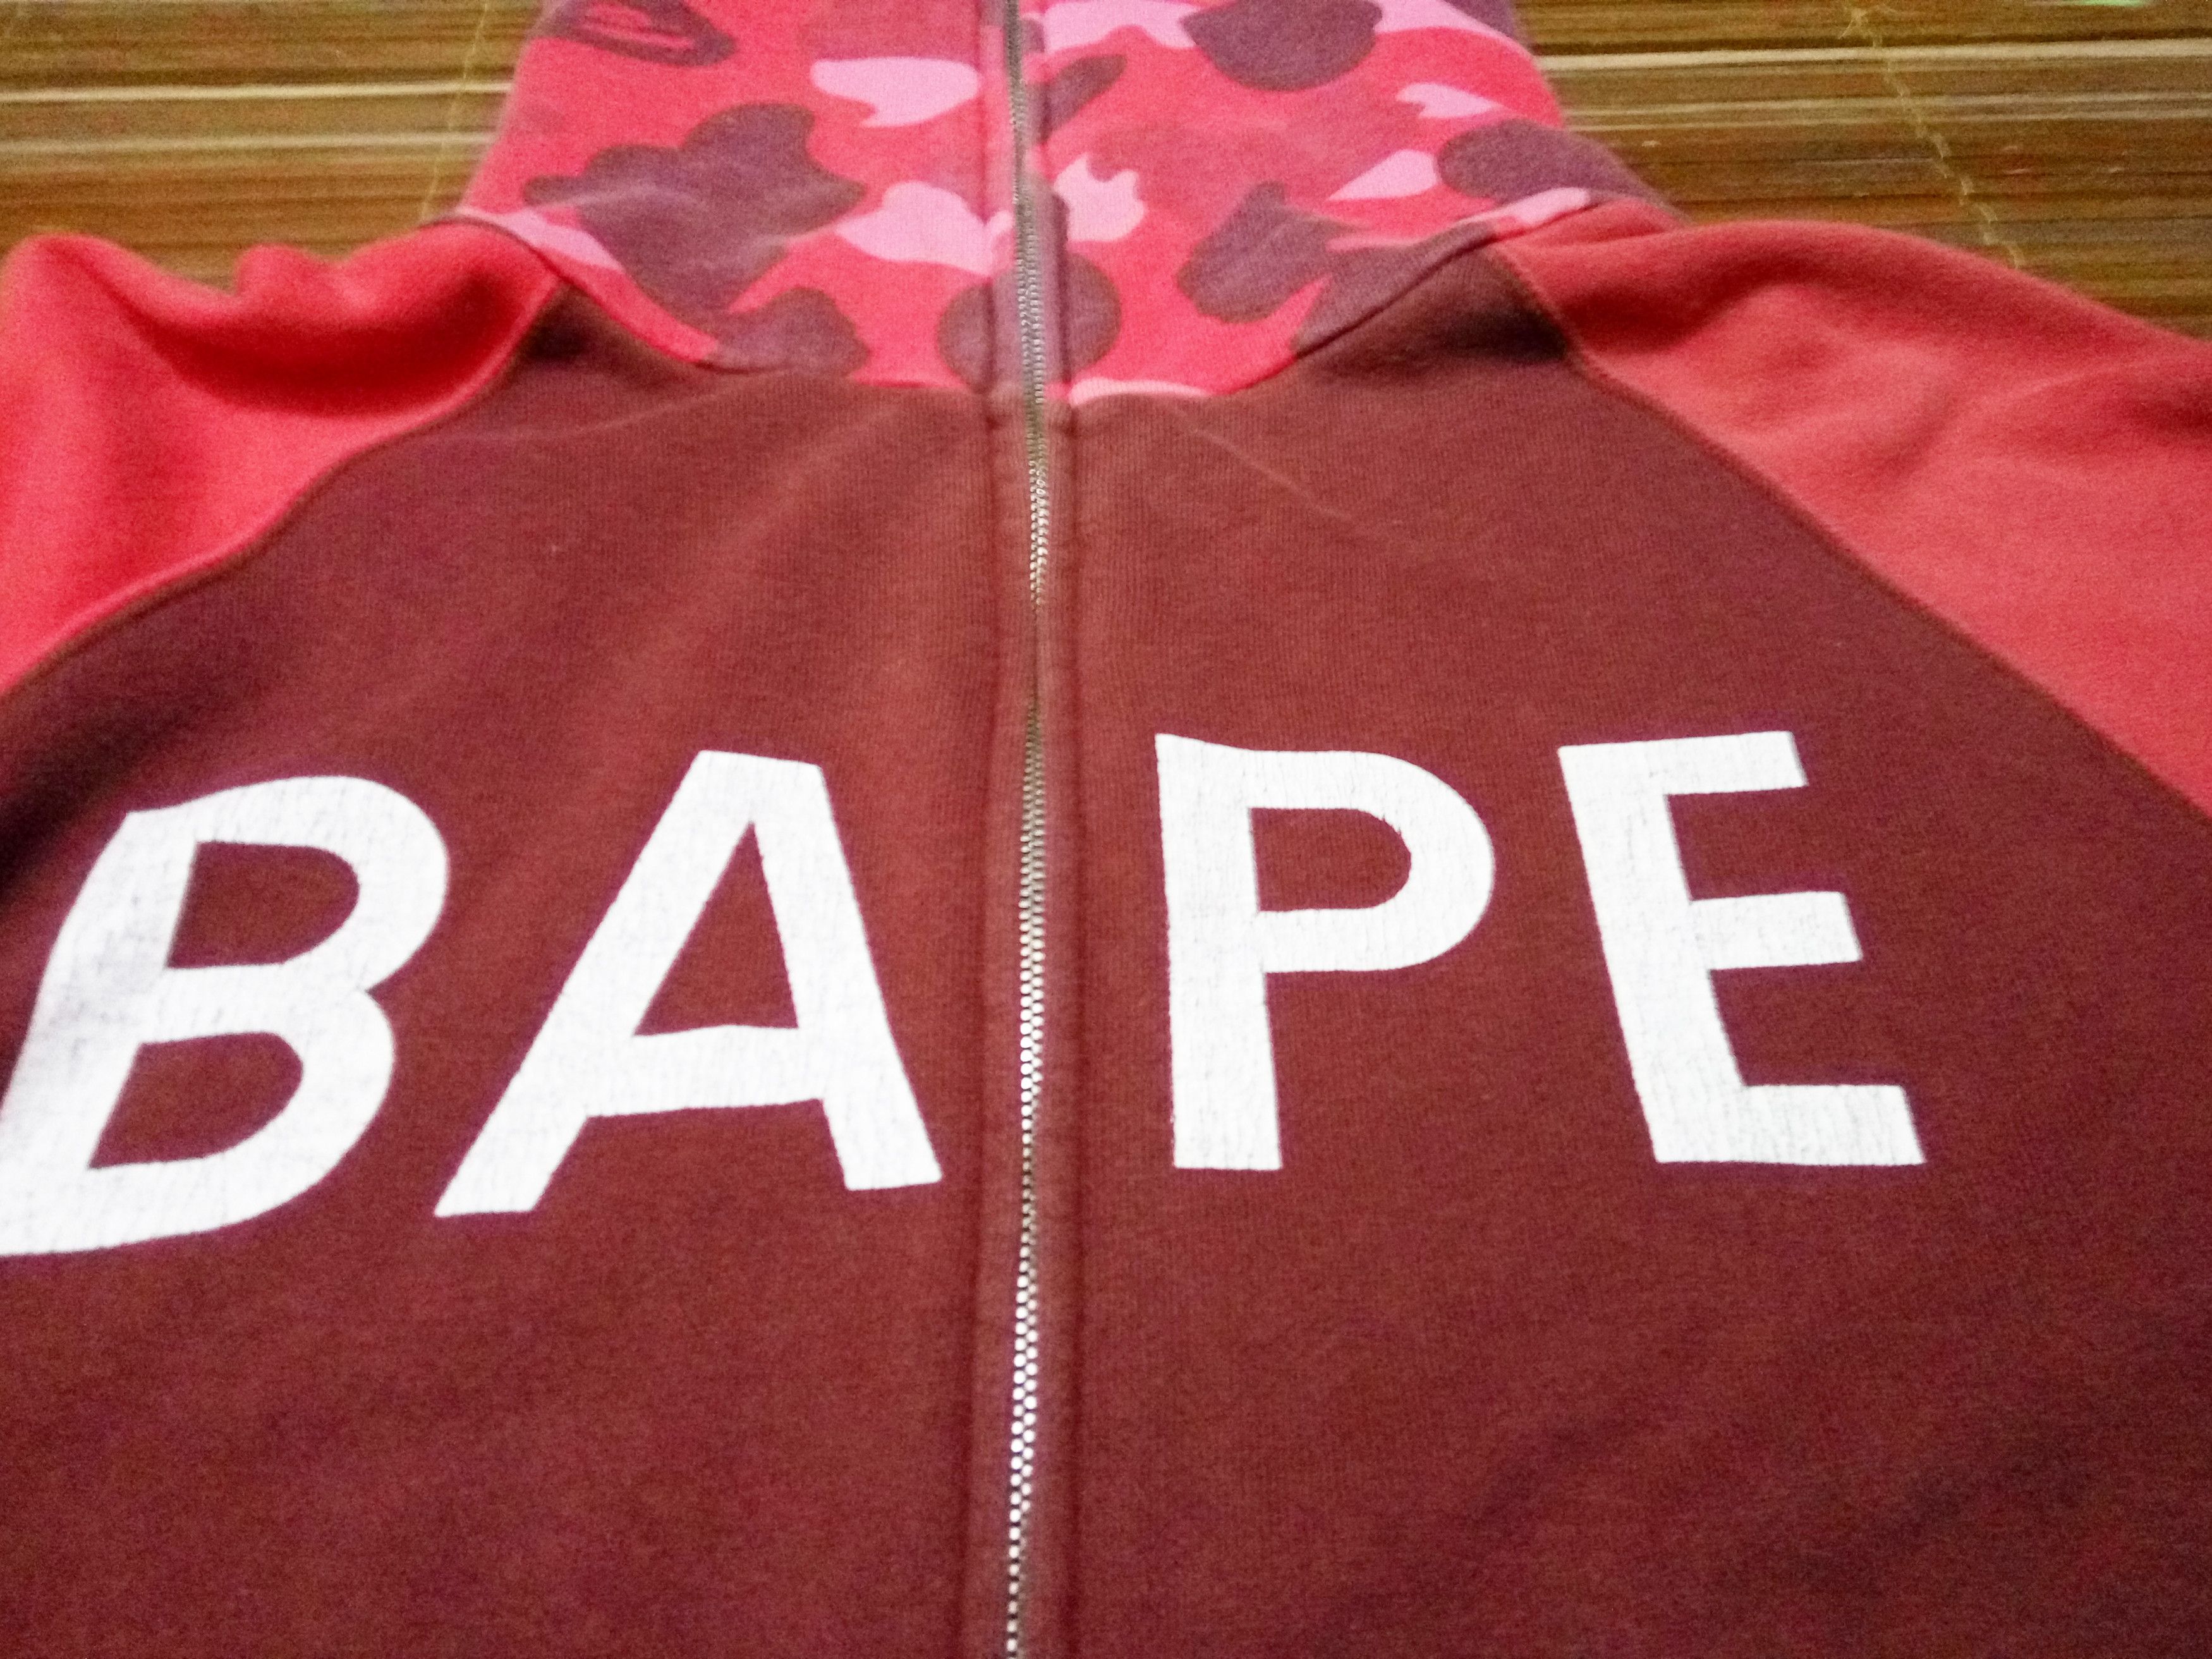 Bape Vintage BAPE A Bathing Ape Hoodie Camo Multi Color Small Size US S / EU 44-46 / 1 - 3 Thumbnail